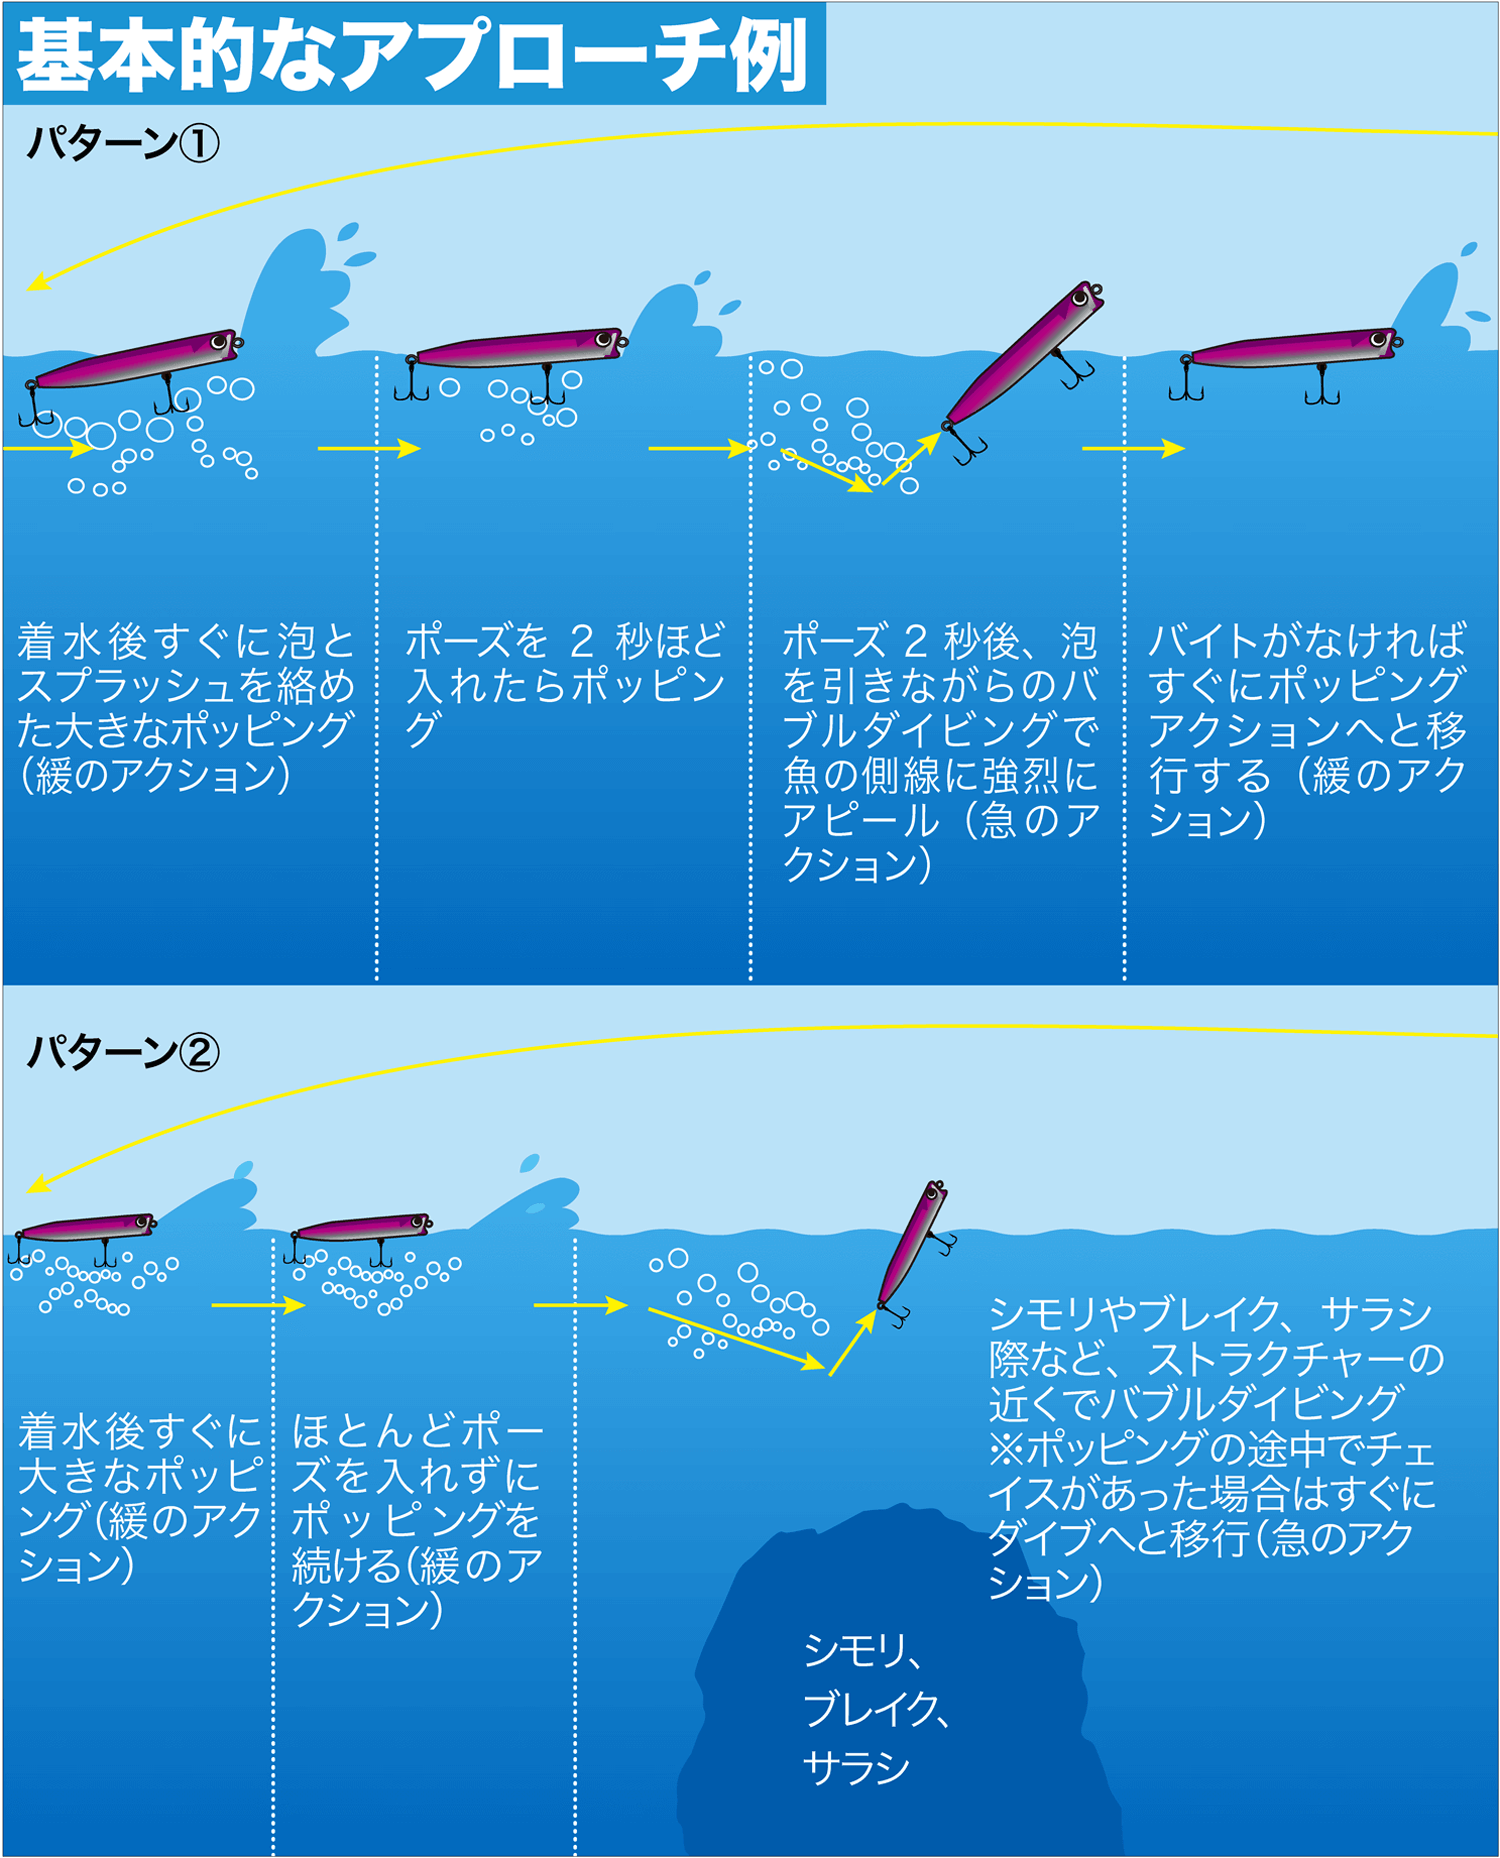 ブリ カンパチ 青物をトリコにするポッパーのバブルダイビングとは Swマガジンweb 海のルアーマンのための総合情報メディア